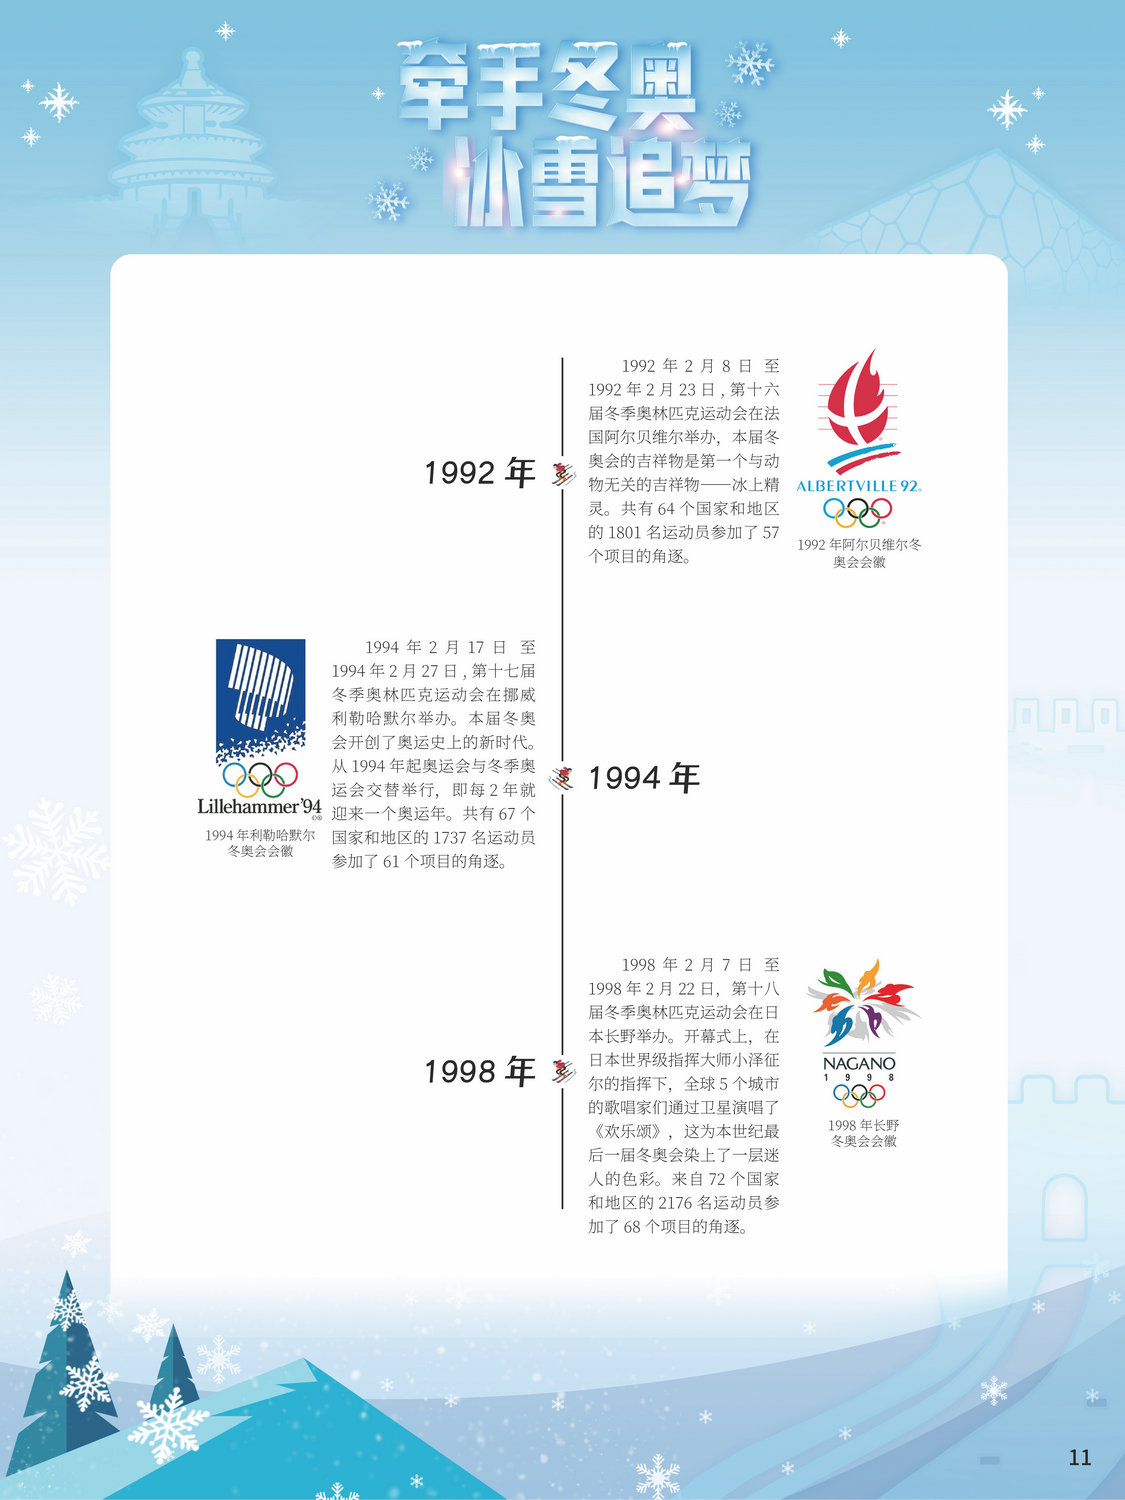 2022北京冬奥巡礼_图11